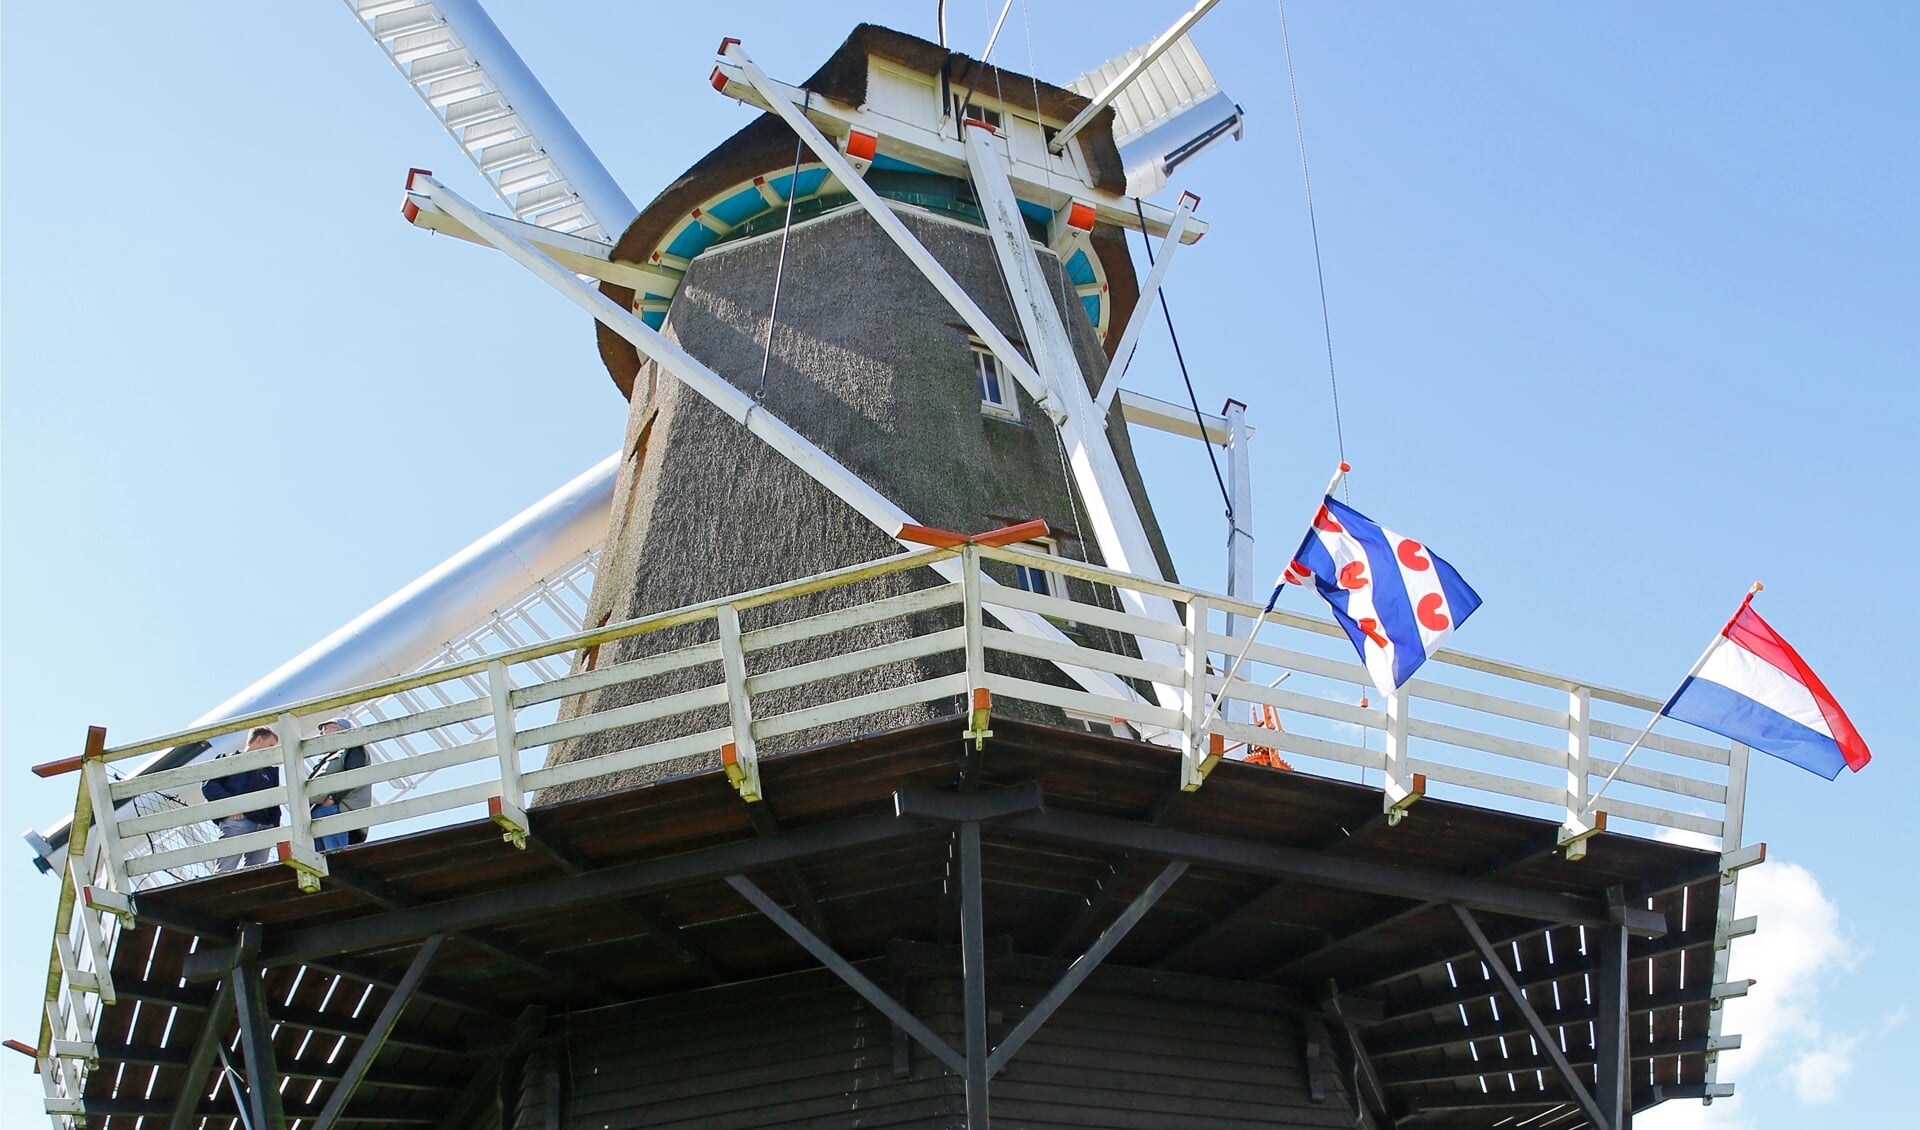 De molen en een tent bij de molen in Burum zijn tijdens de reünie centrale ontmoetingsplekken.